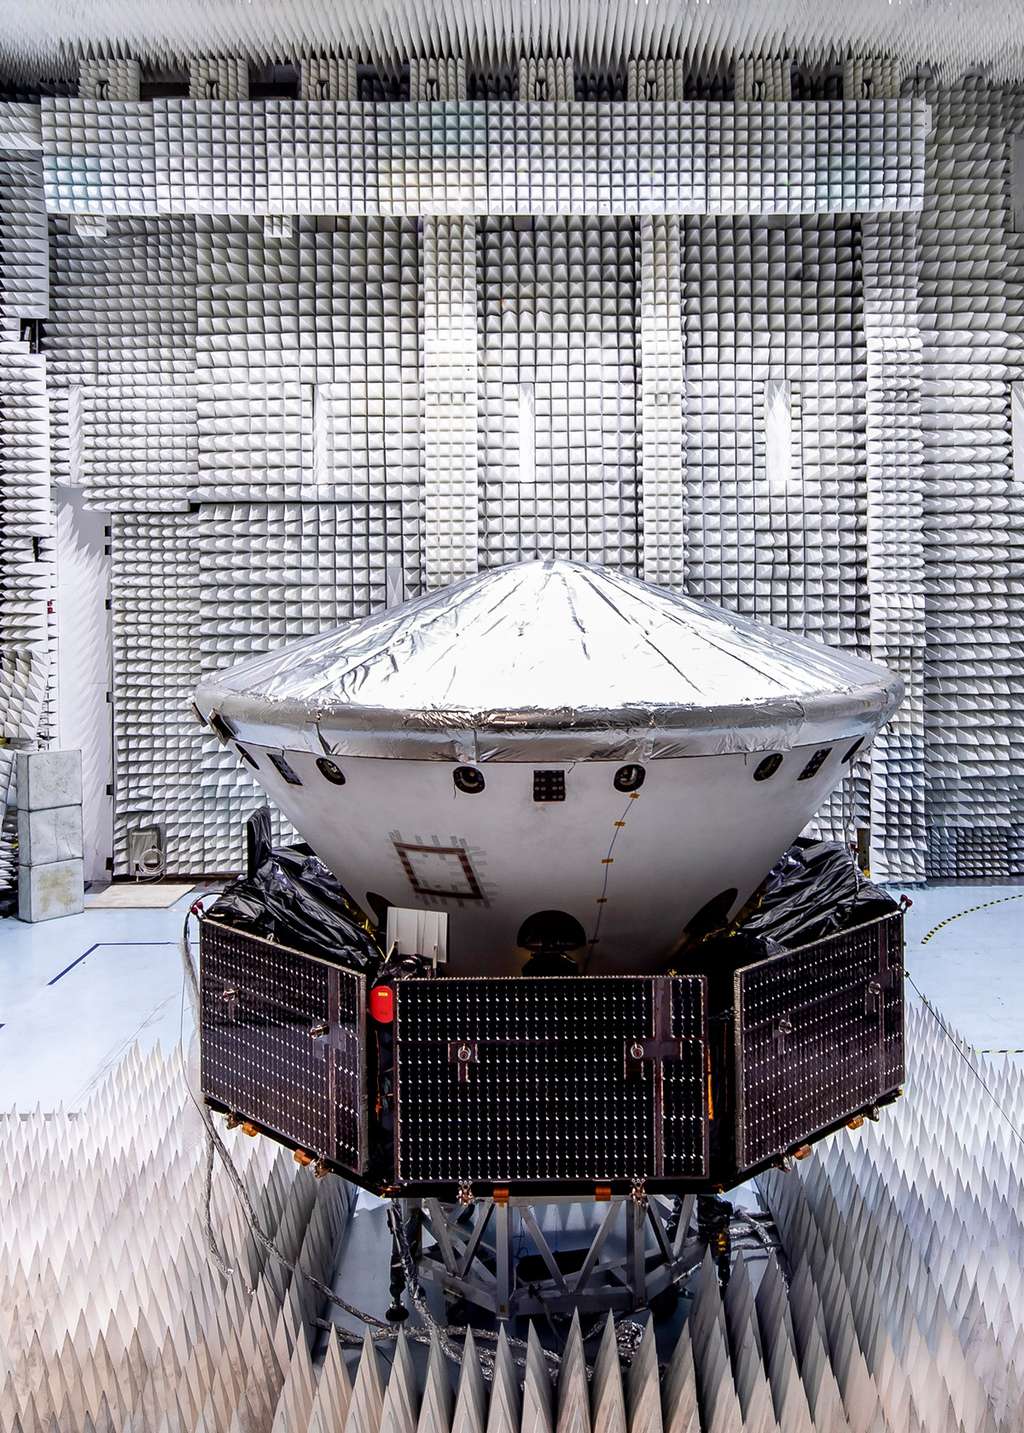 La sonde ExoMars 2020, lors d'essais dans une des chambres anéchoïques de l'usine cannoise de Thales Alenia Space. ExoMars 2020 est ici vu dans sa configuration de vol avec le module de transfert (le carrier, reconnaissable à ses panneaux solaires), le bouclier thermique (avec les cônes avant et arrière) à l'intérieur duquel se trouve la plateforme d'atterrissage Kazachok qui supporte le rover Rosalind Franklin (absent lors de cet essai). © Thales Alenia Space, Alizée Palomba